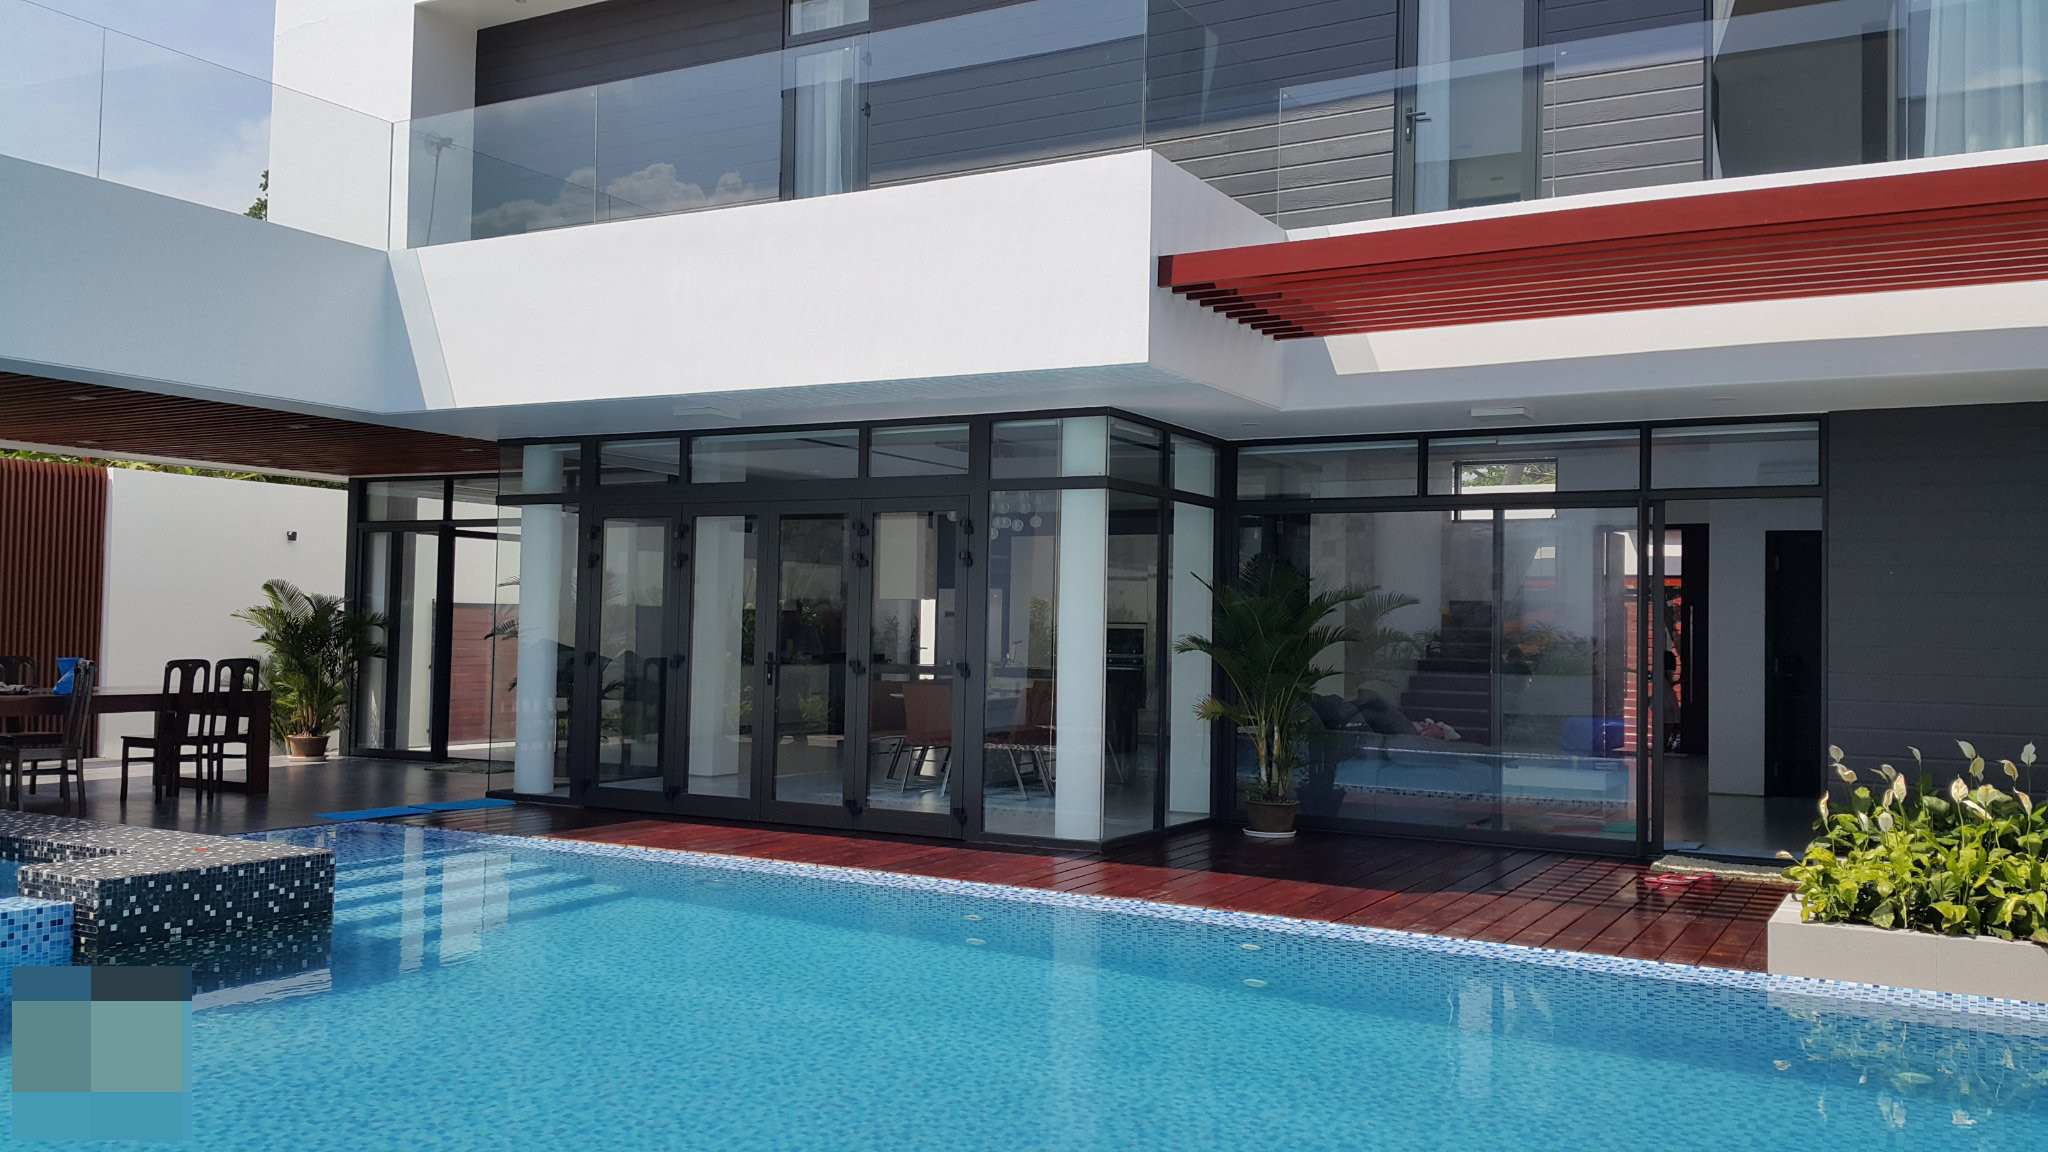 villa 808 - Villa hút hồn với không gian mở, sử dụng hồ bơi và bể sục tiện nghi